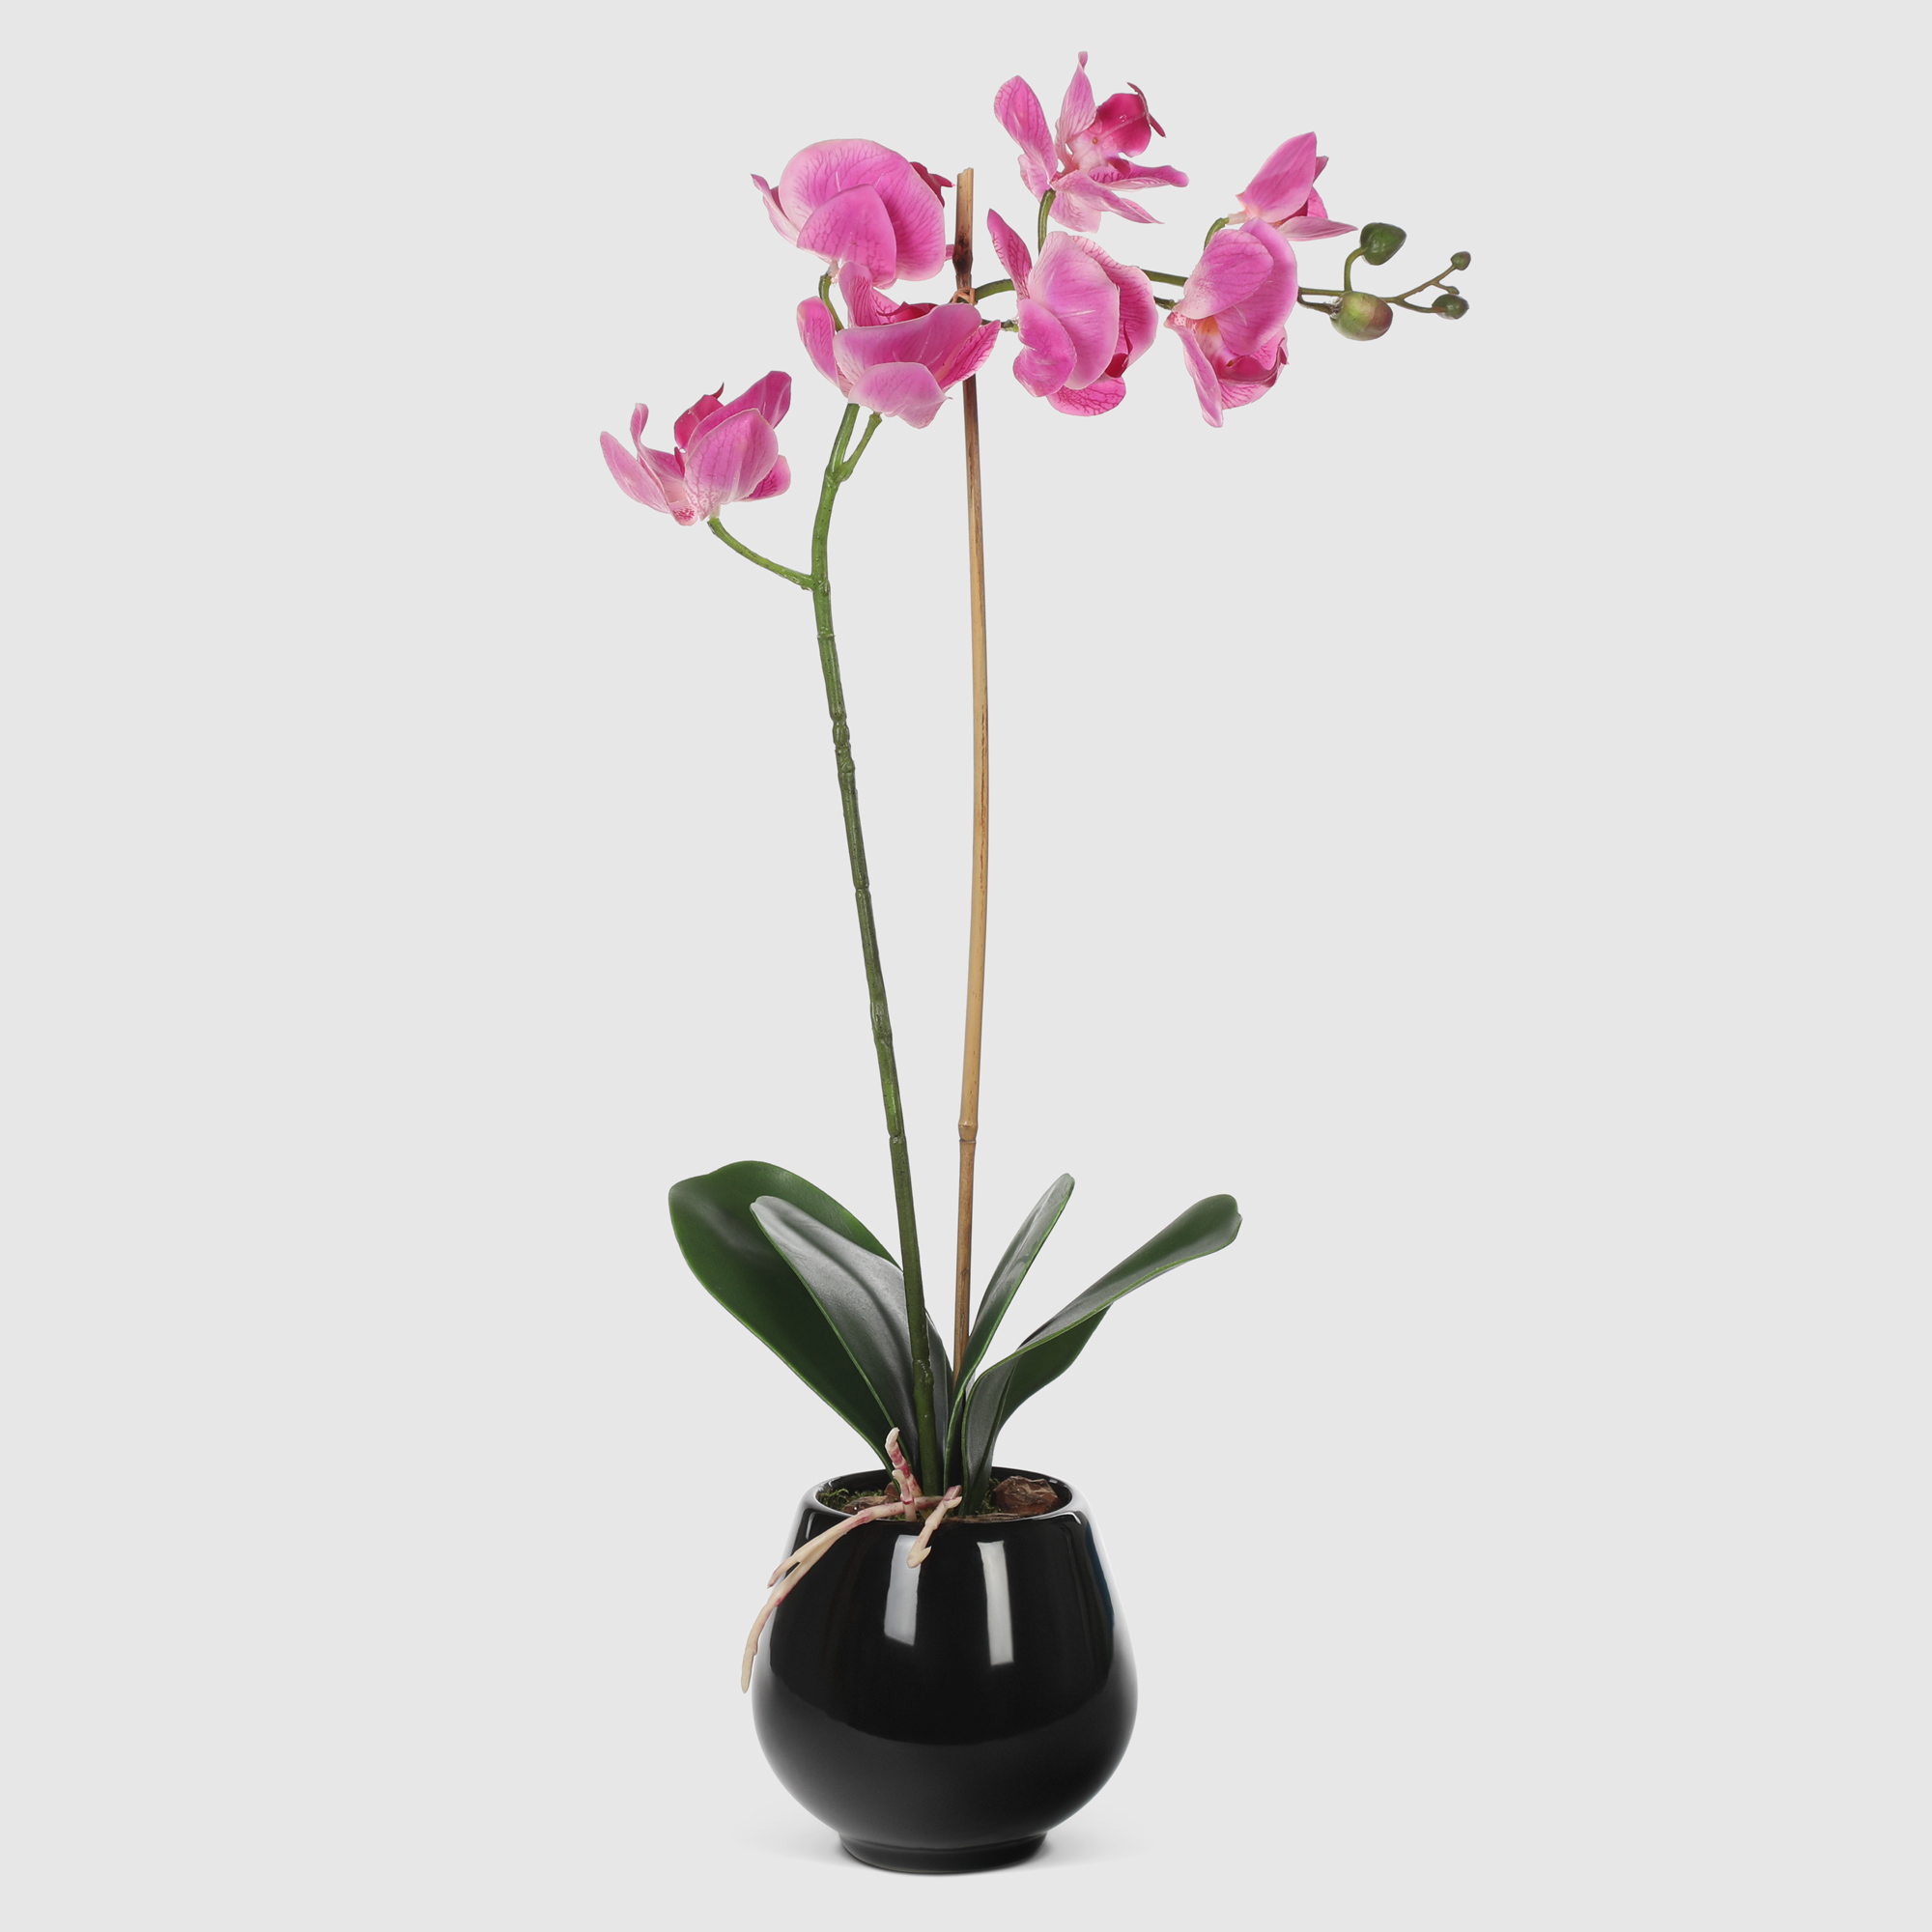 Орхидея в черном кашпо Конэко-О 566_10164185 50 см цветок искусственный конэко о орхидея в декоративном кашпо 57 см